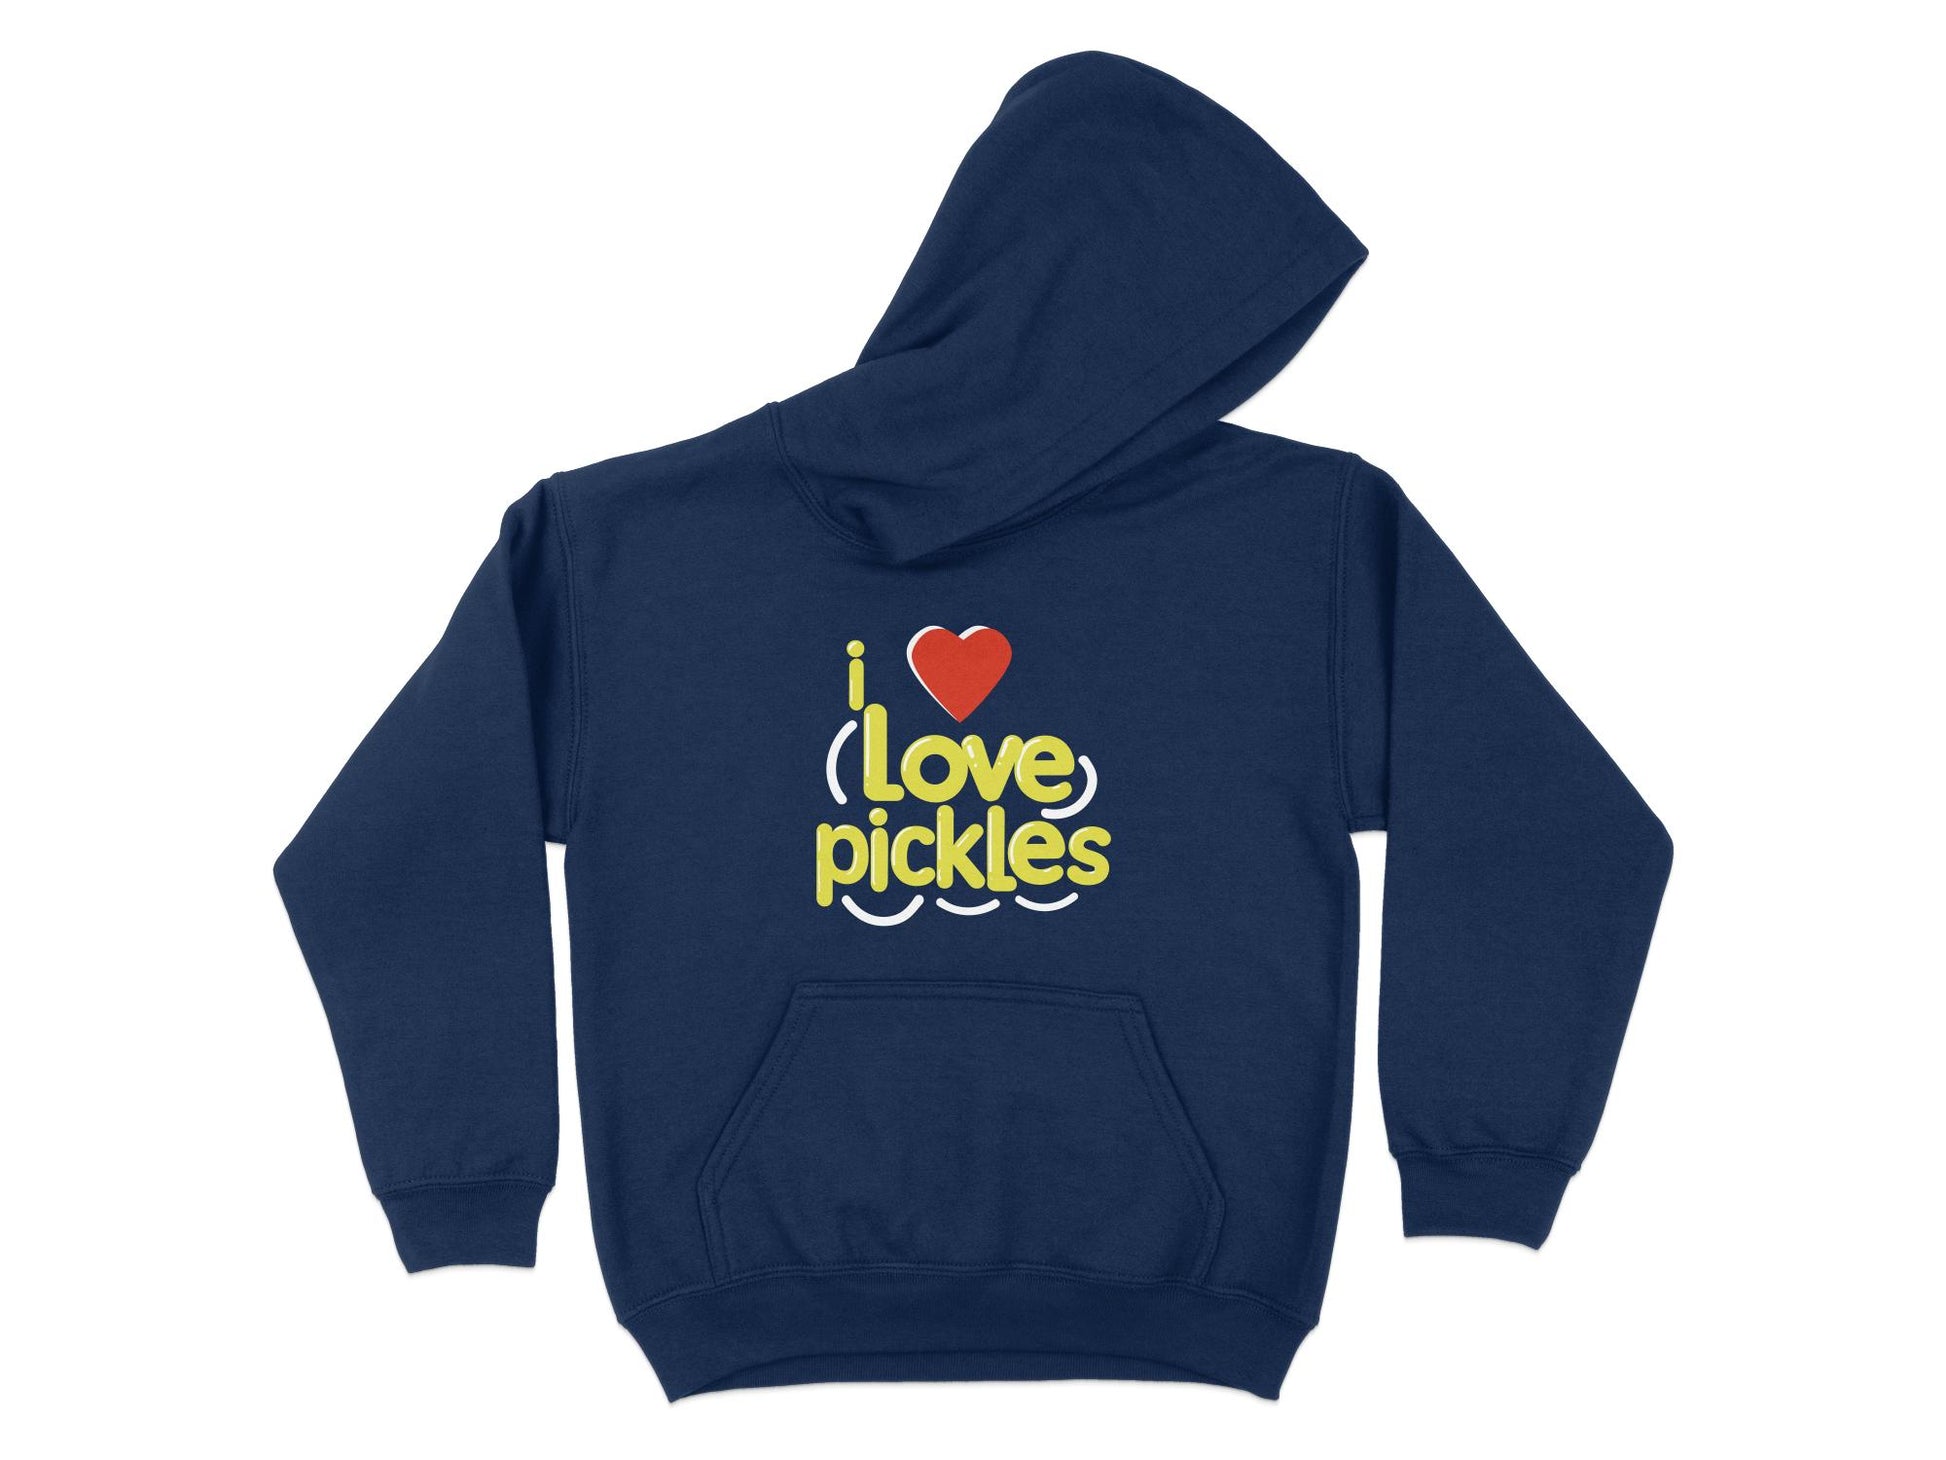 I Love Pickles Hoodie, navy blue